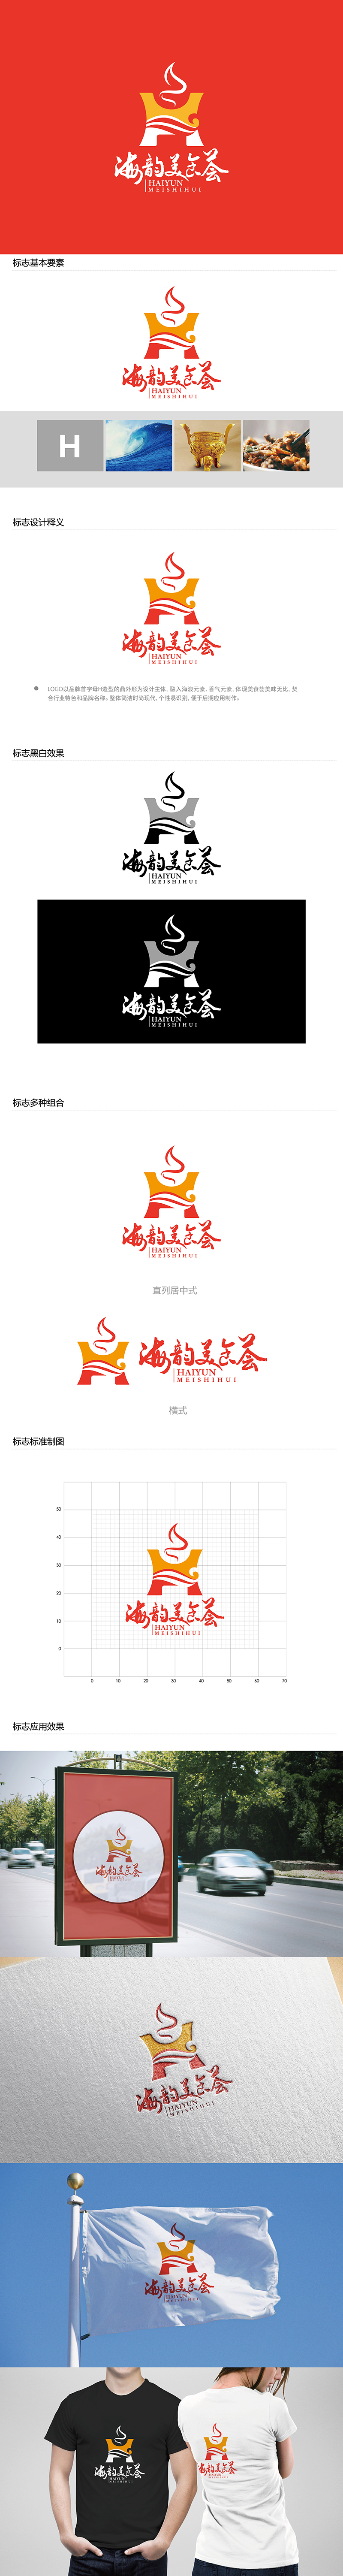 勇炎的海韵美食荟logo设计